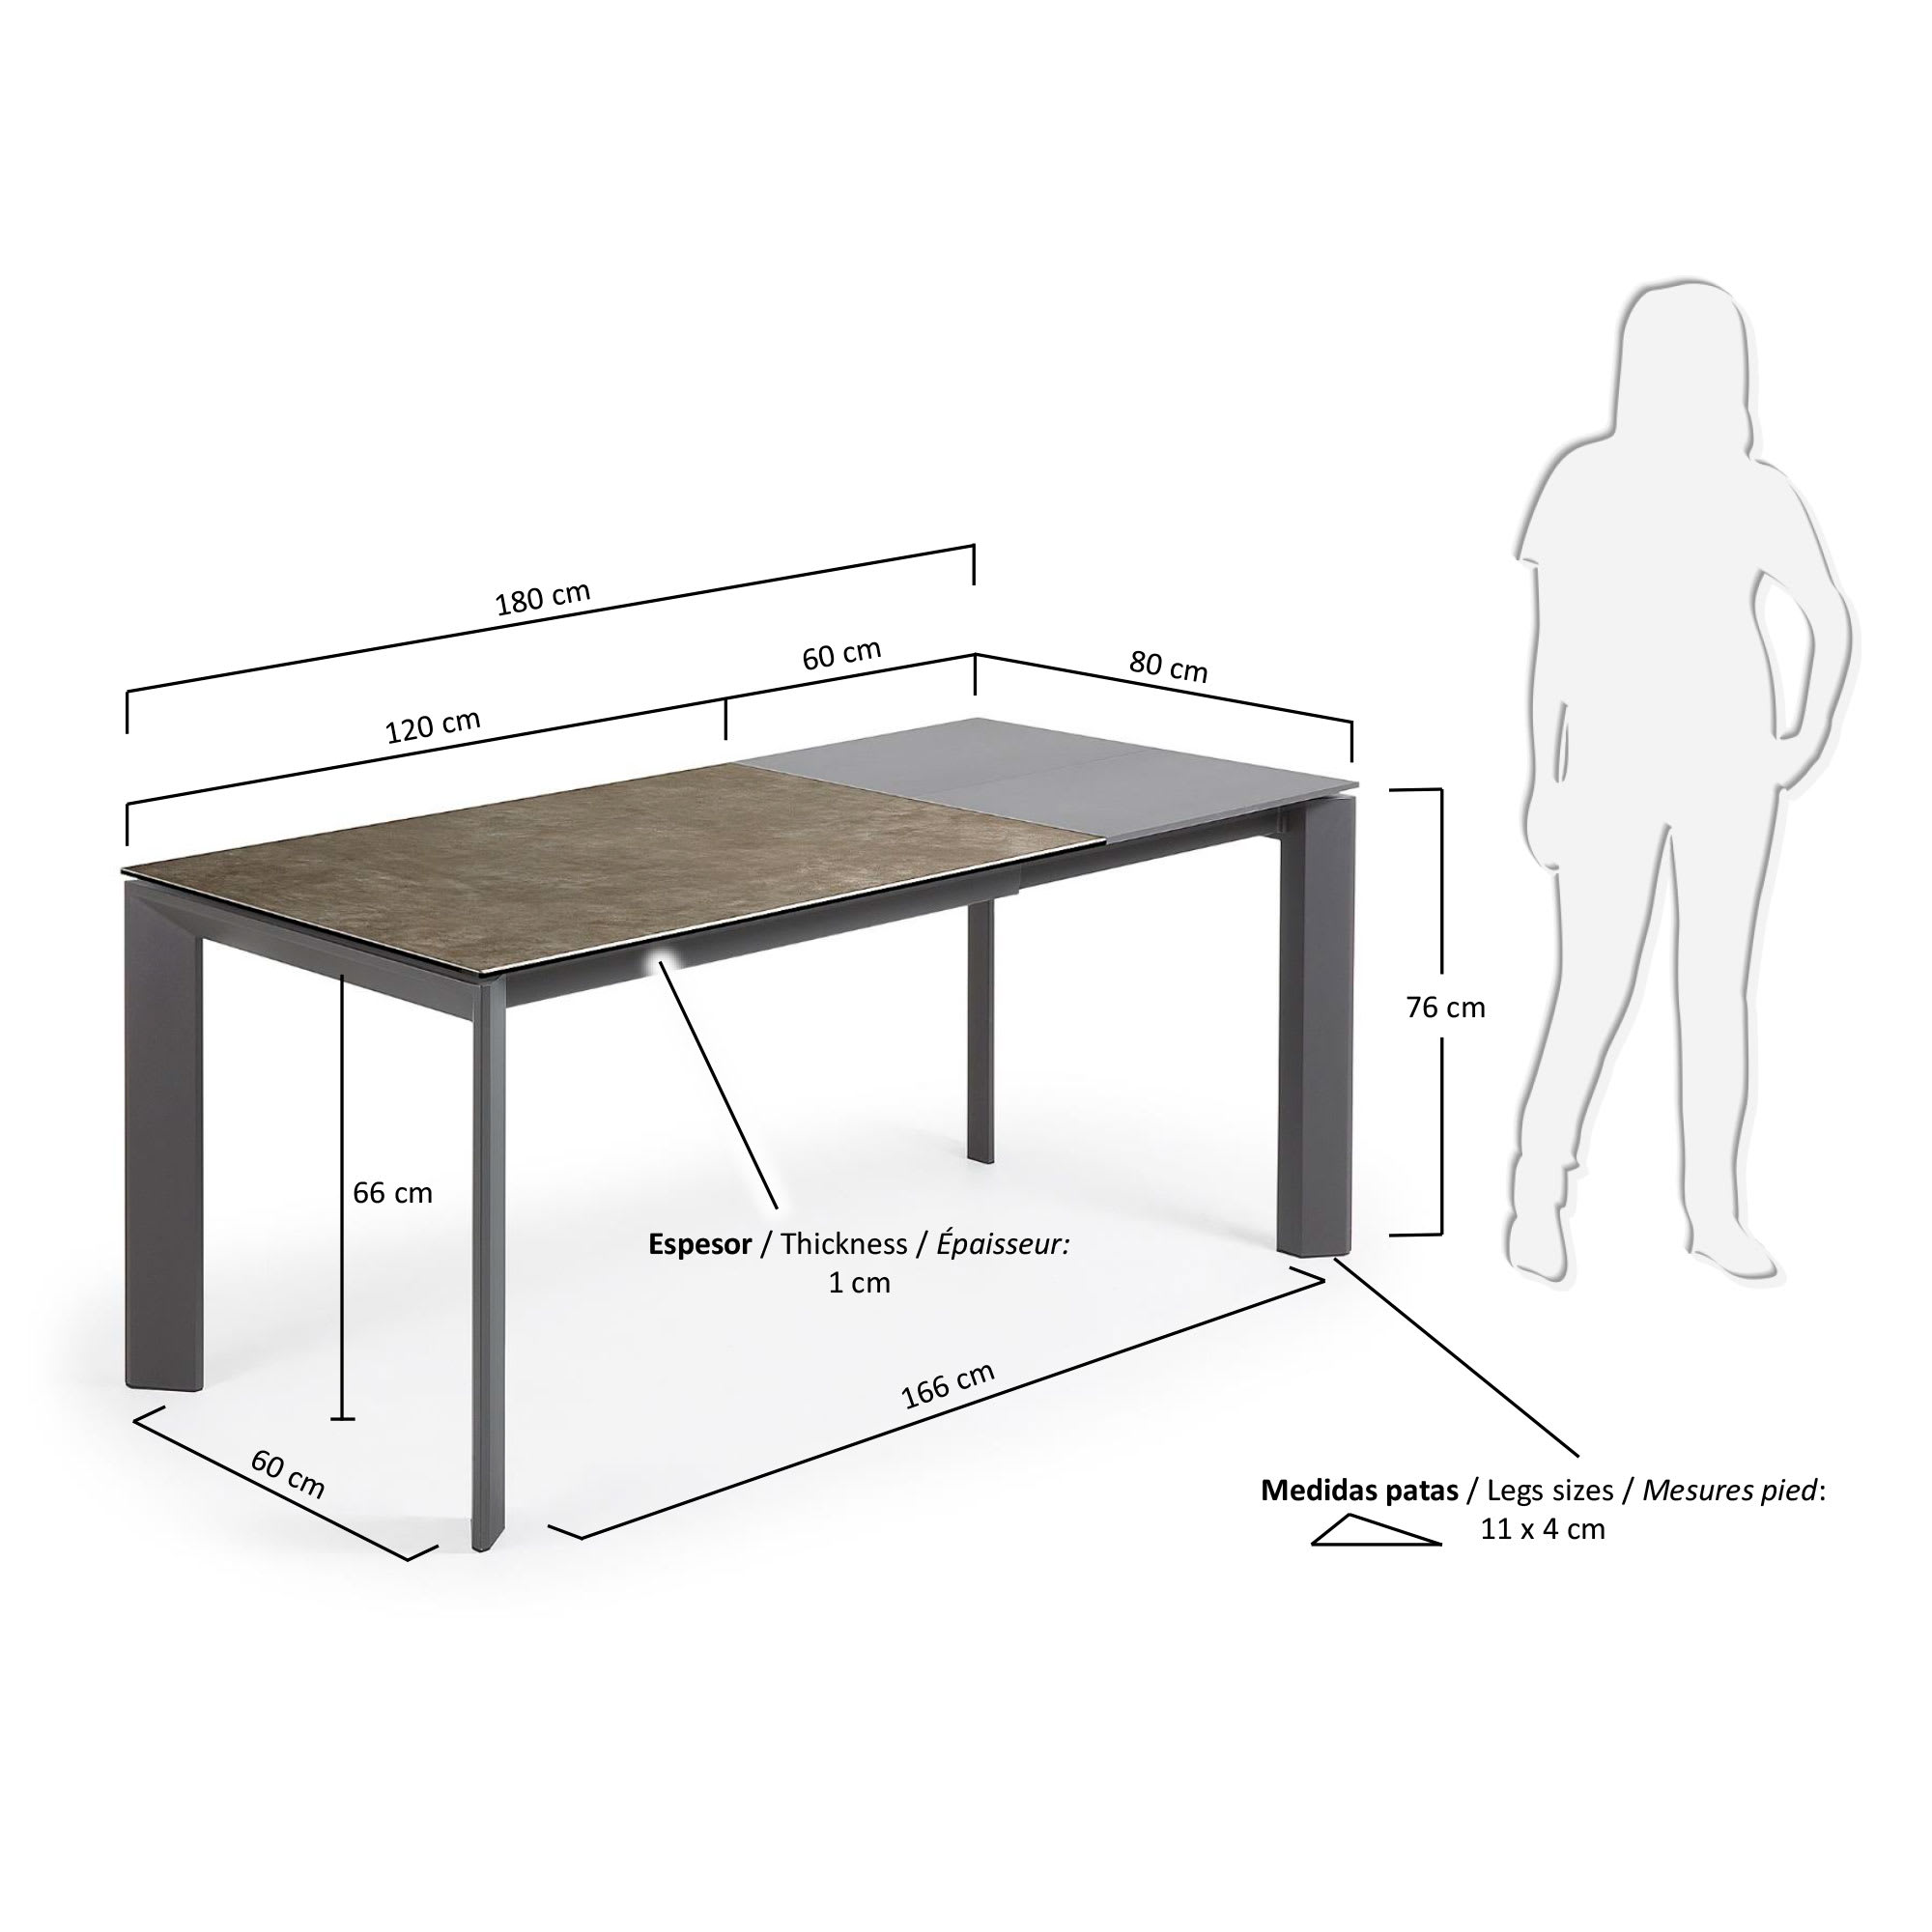 엑시스 세라믹 확장형 테이블 VC(80 x 120-180cm) - 크기